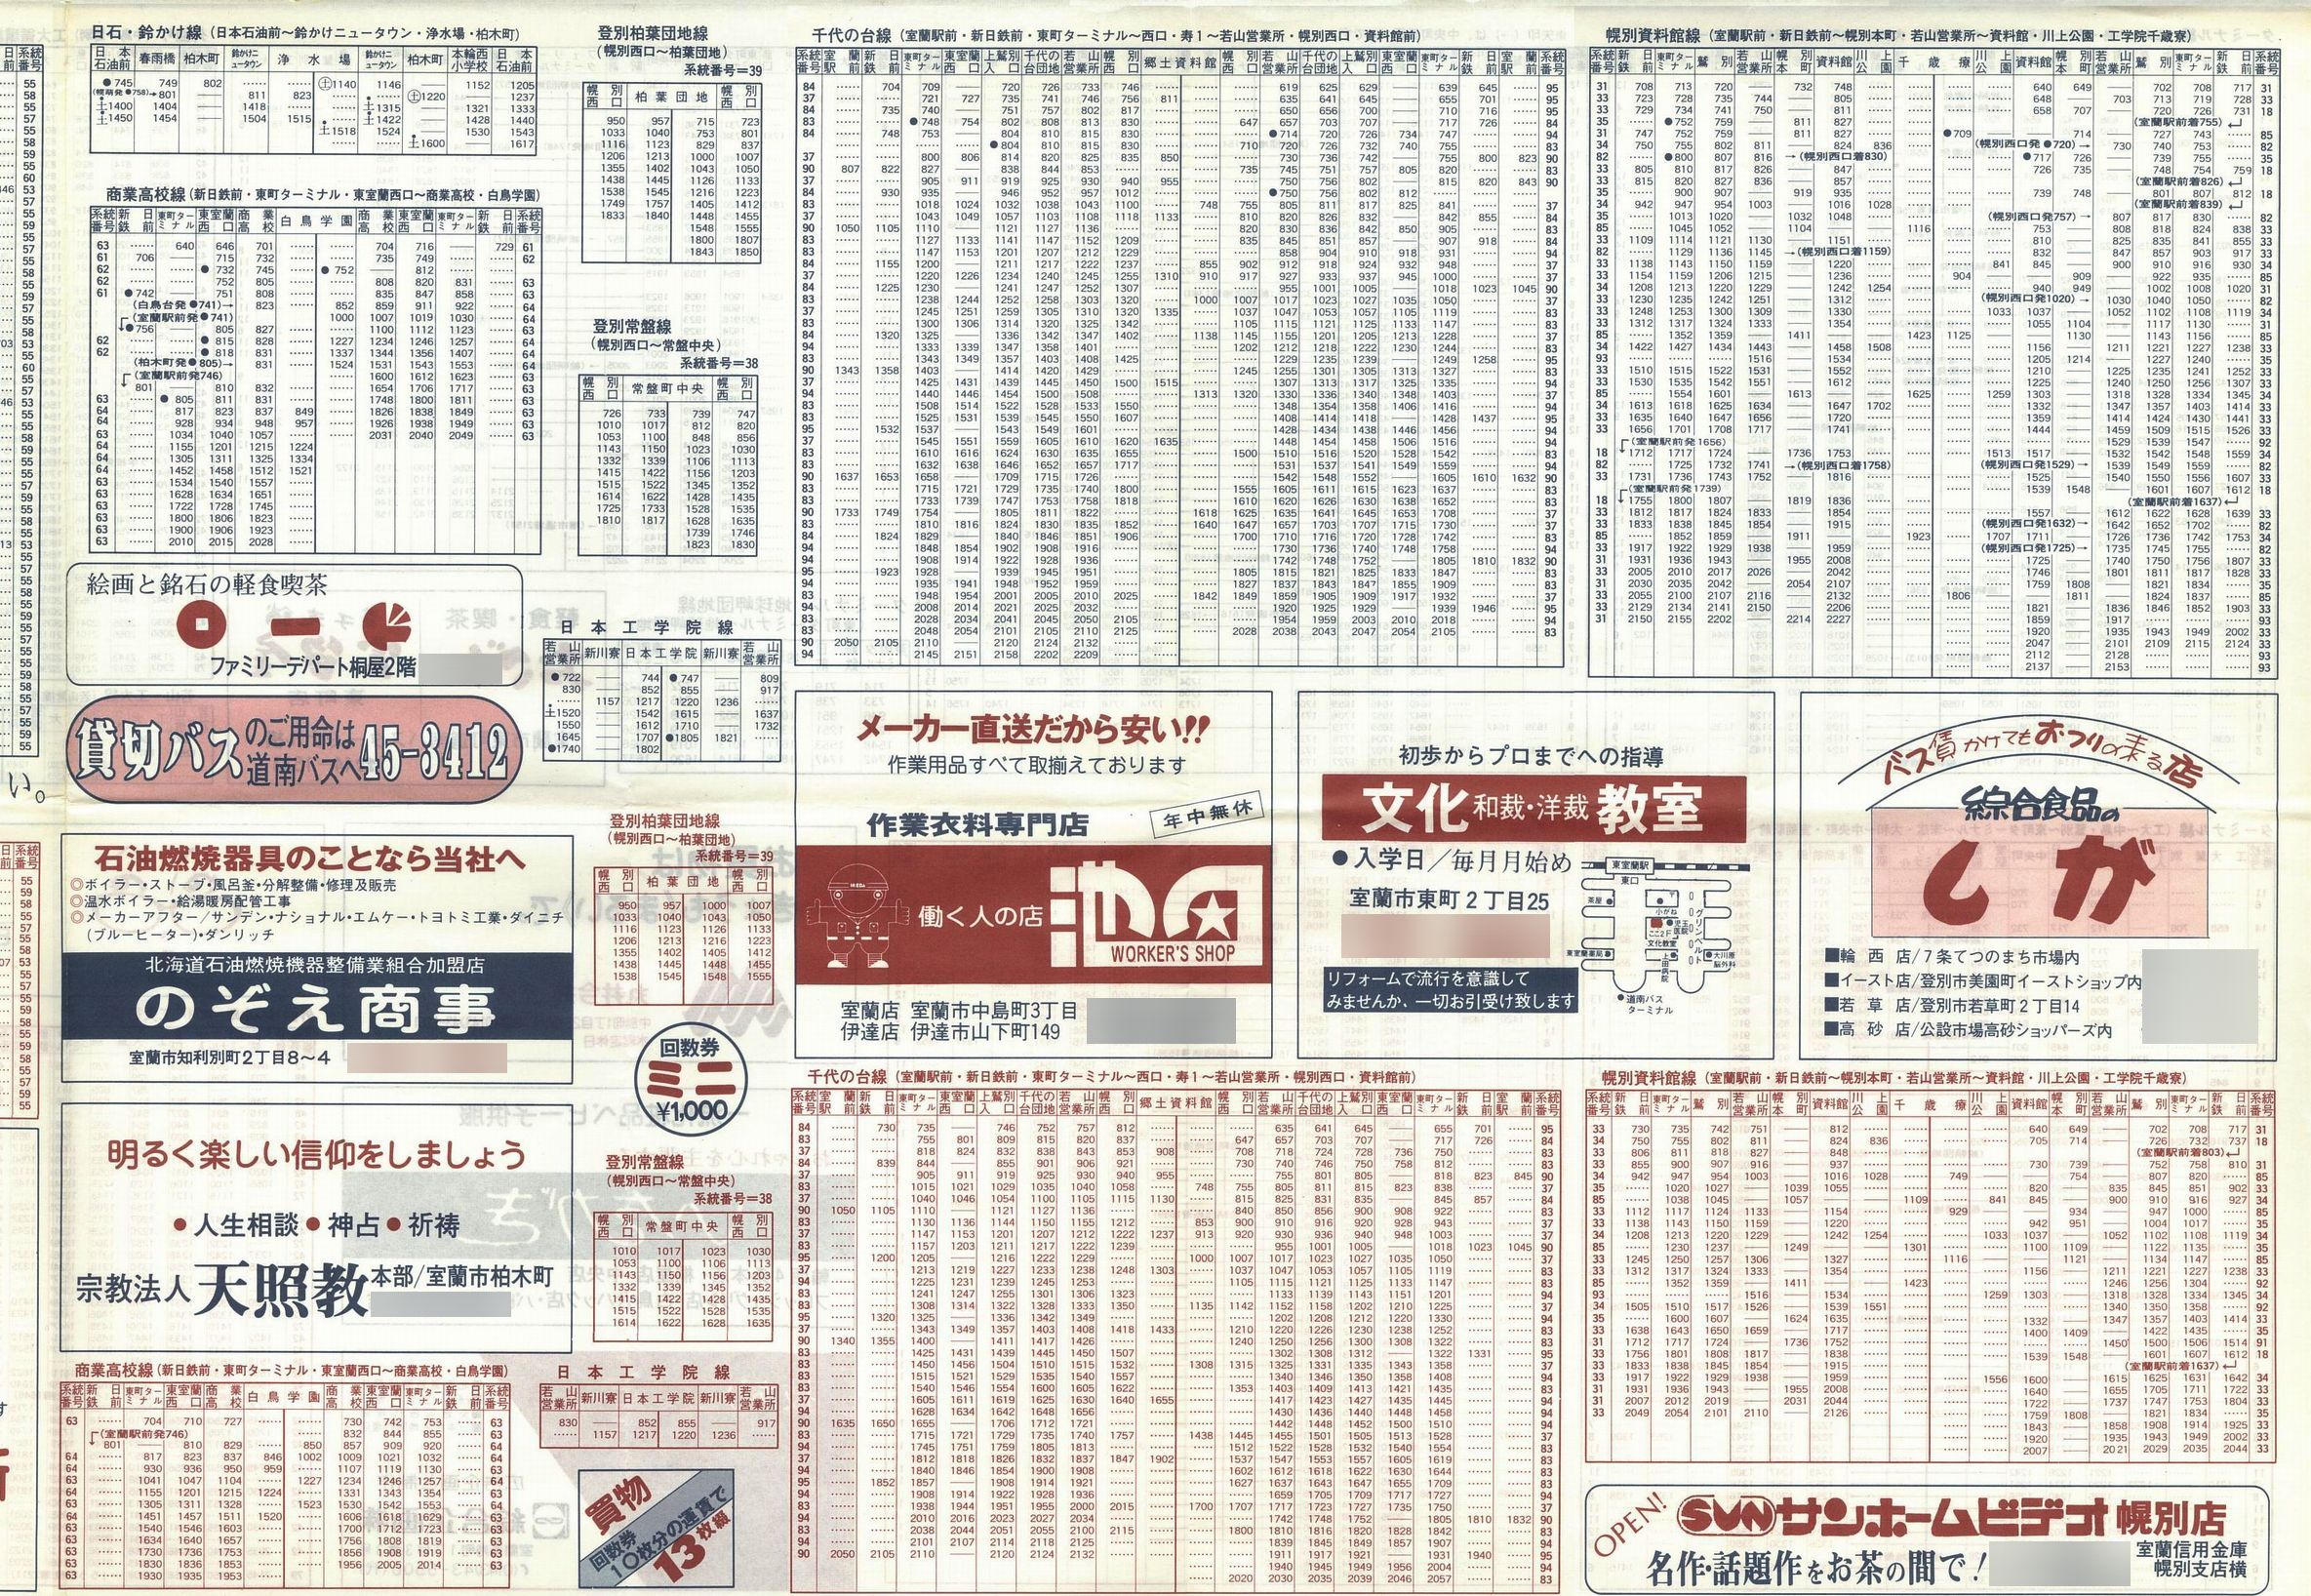 1987-04-01改正_道南バス_室蘭市内線時刻表表面２